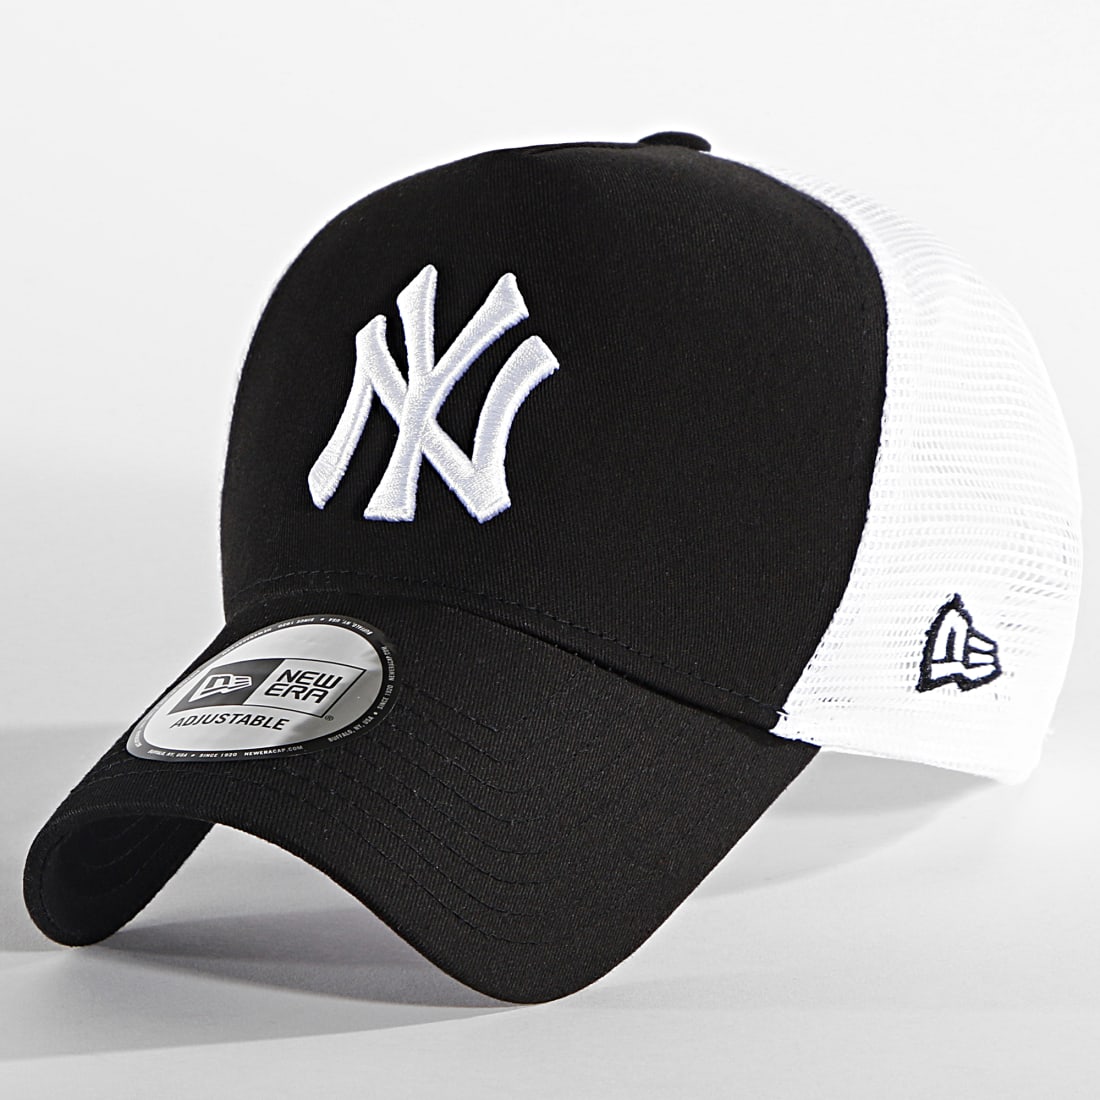 Choisir Casquette NY Blanc Noir, casquette baseball fashion livré 48h!